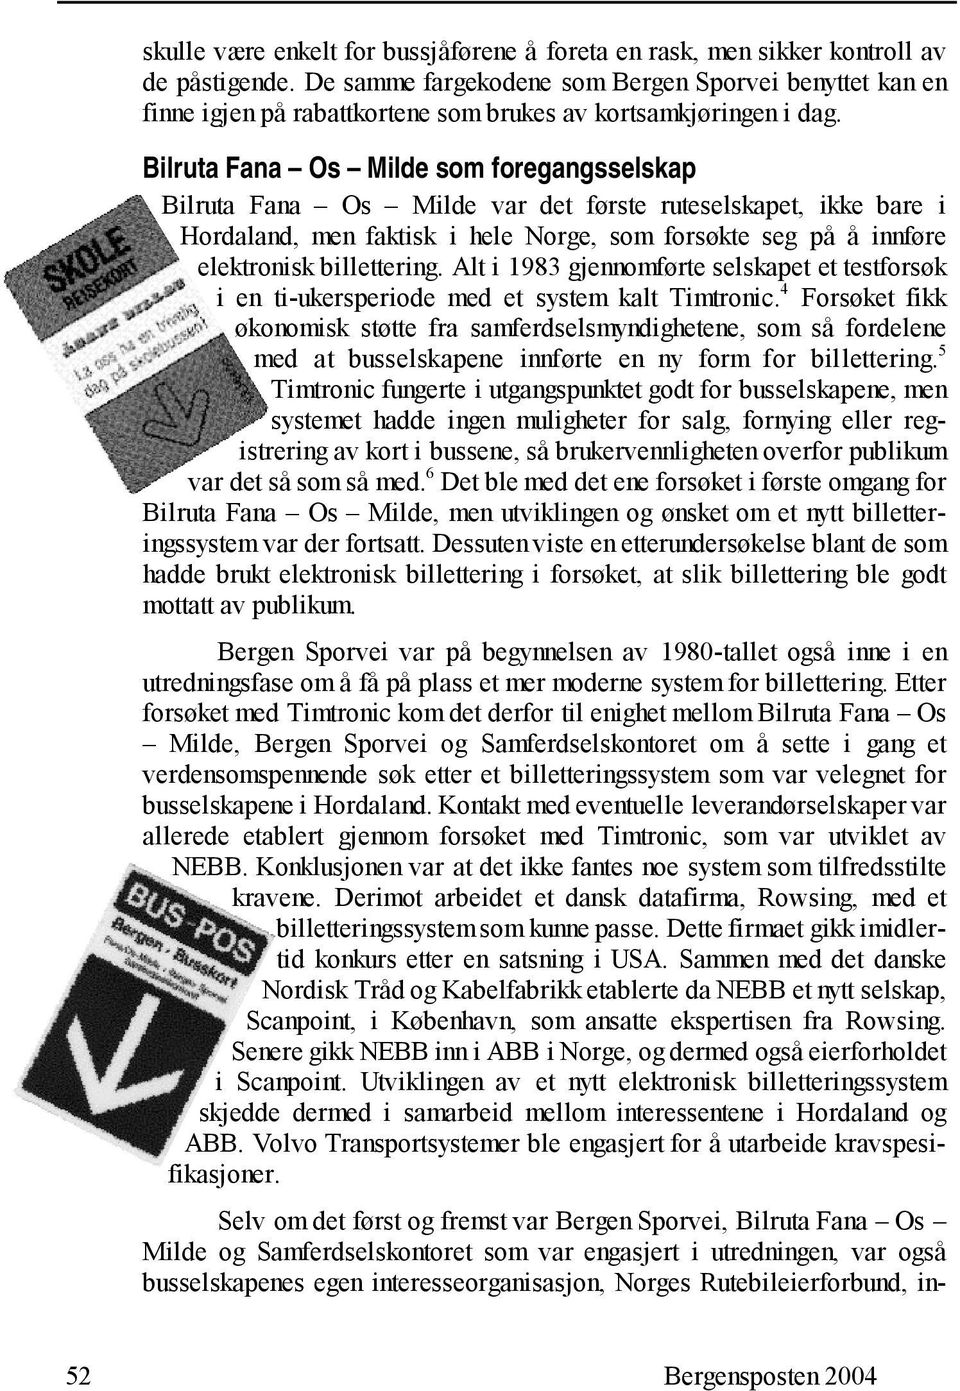 Bilruta Fana Os Milde som foregangsselskap Bilruta Fana Os Milde var det første ruteselskapet, ikke bare i Hordaland, men faktisk i hele Norge, som forsøkte seg på å innføre elektronisk billettering.